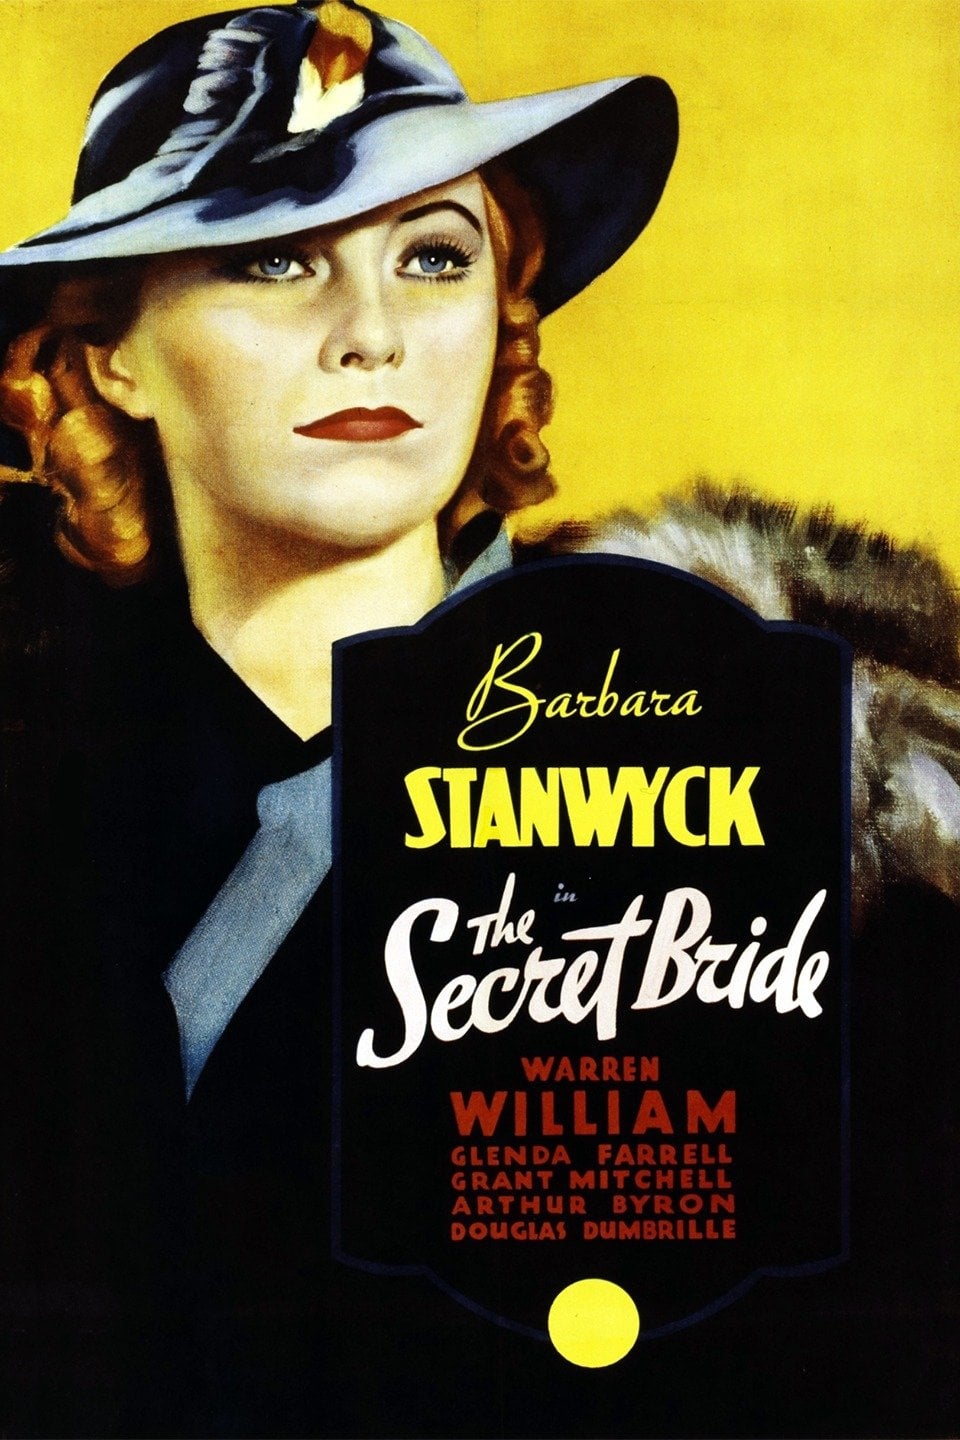 The Secret Bride (1934)